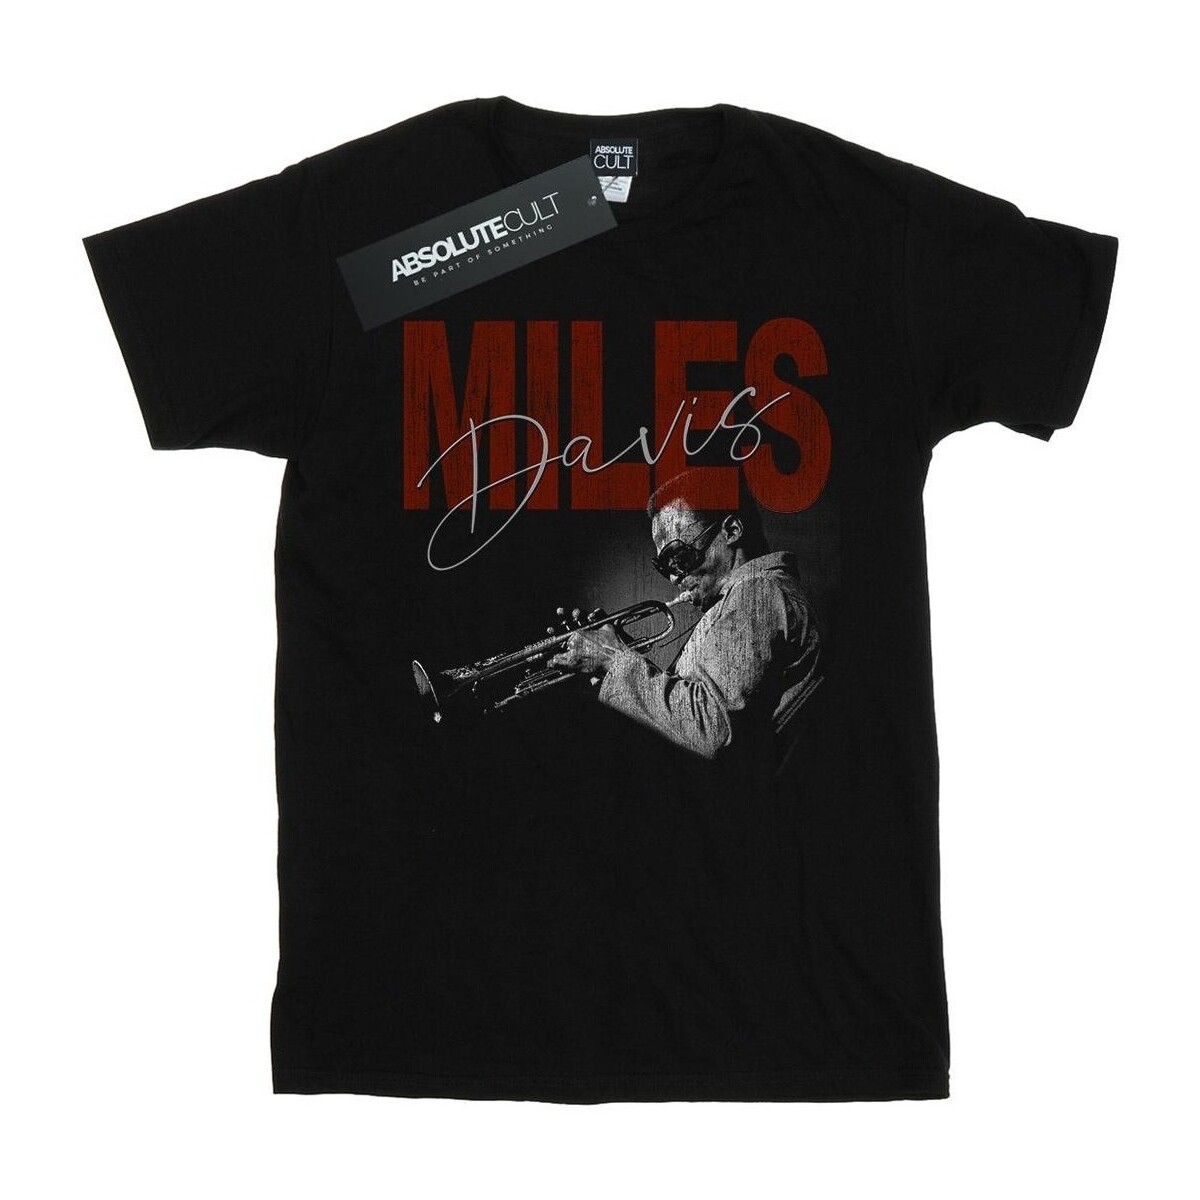 Vêtements Homme T-shirts manches longues Miles Davis Distressed Photo Noir